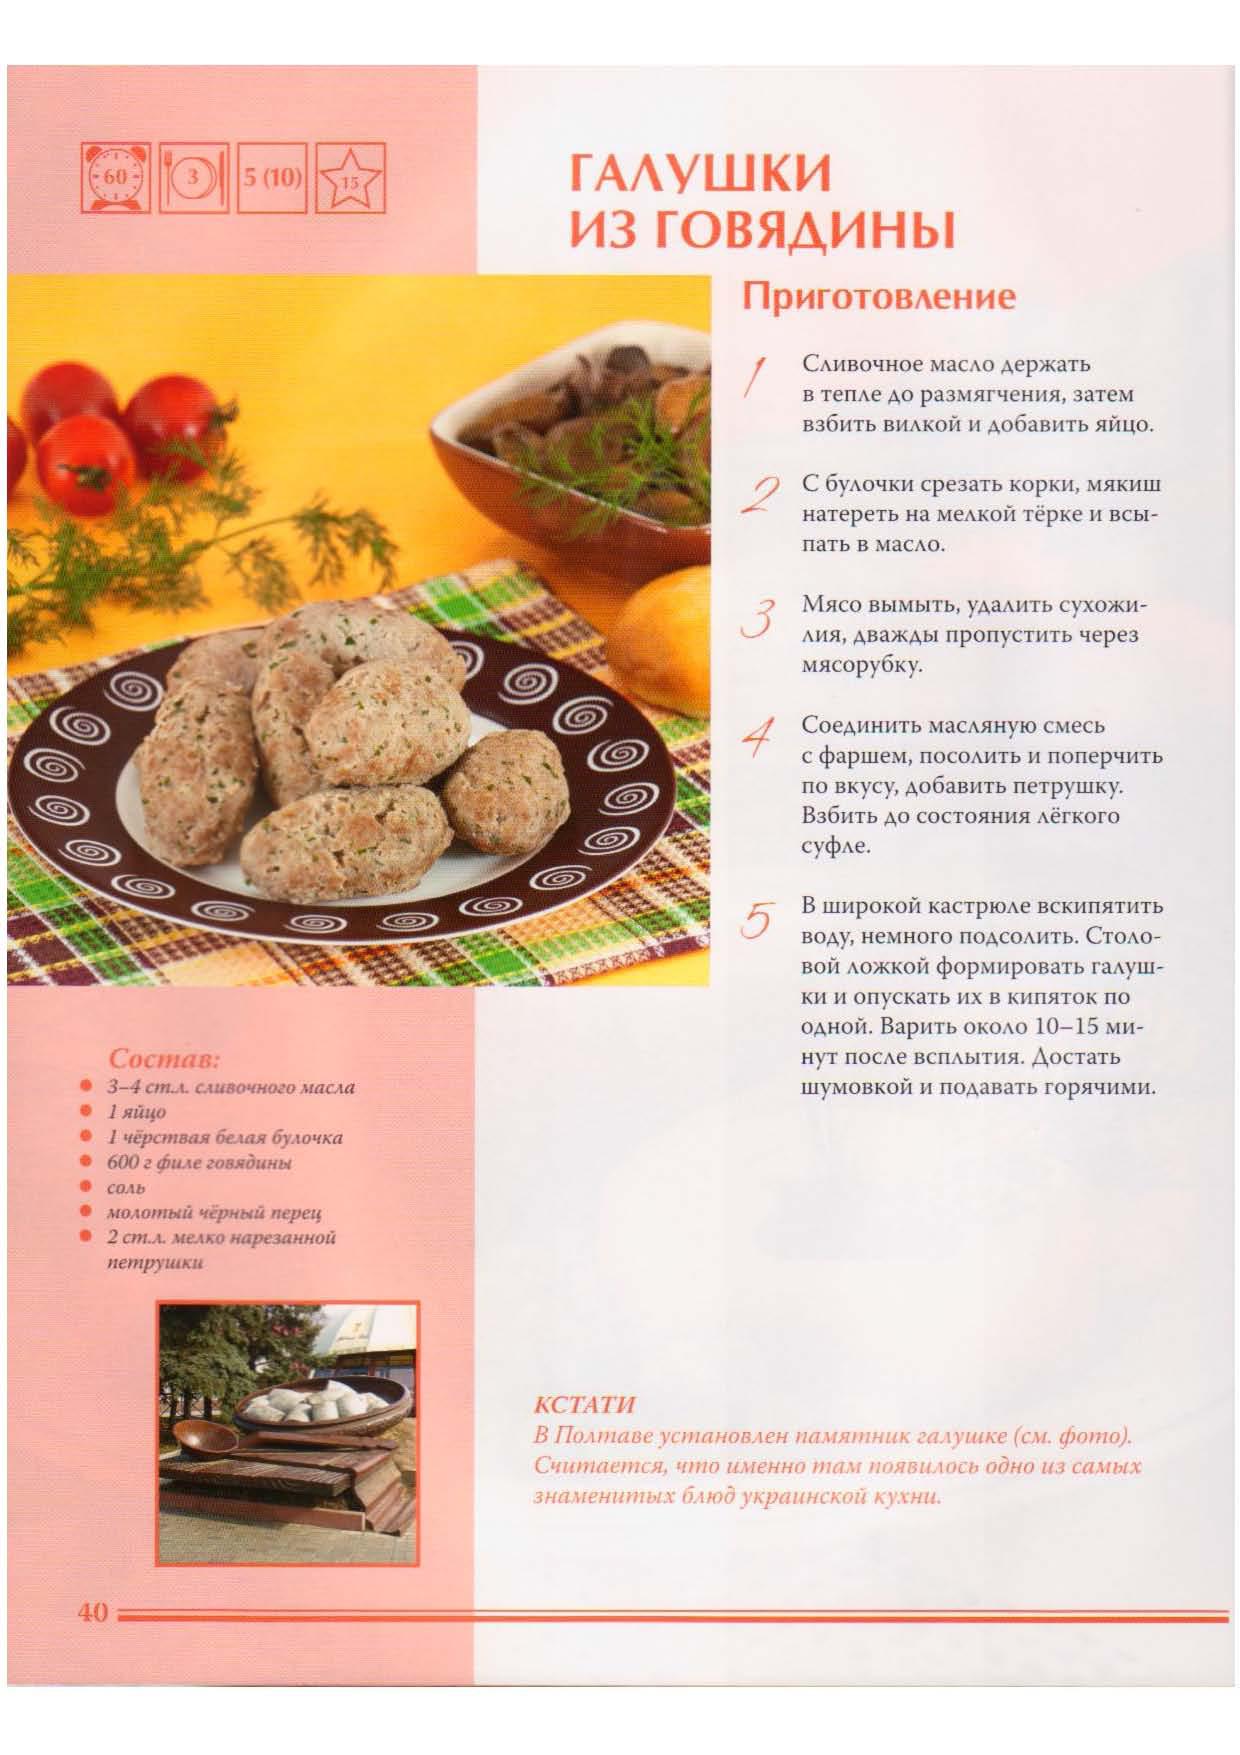 Кухни народов мира. Украинская кухня